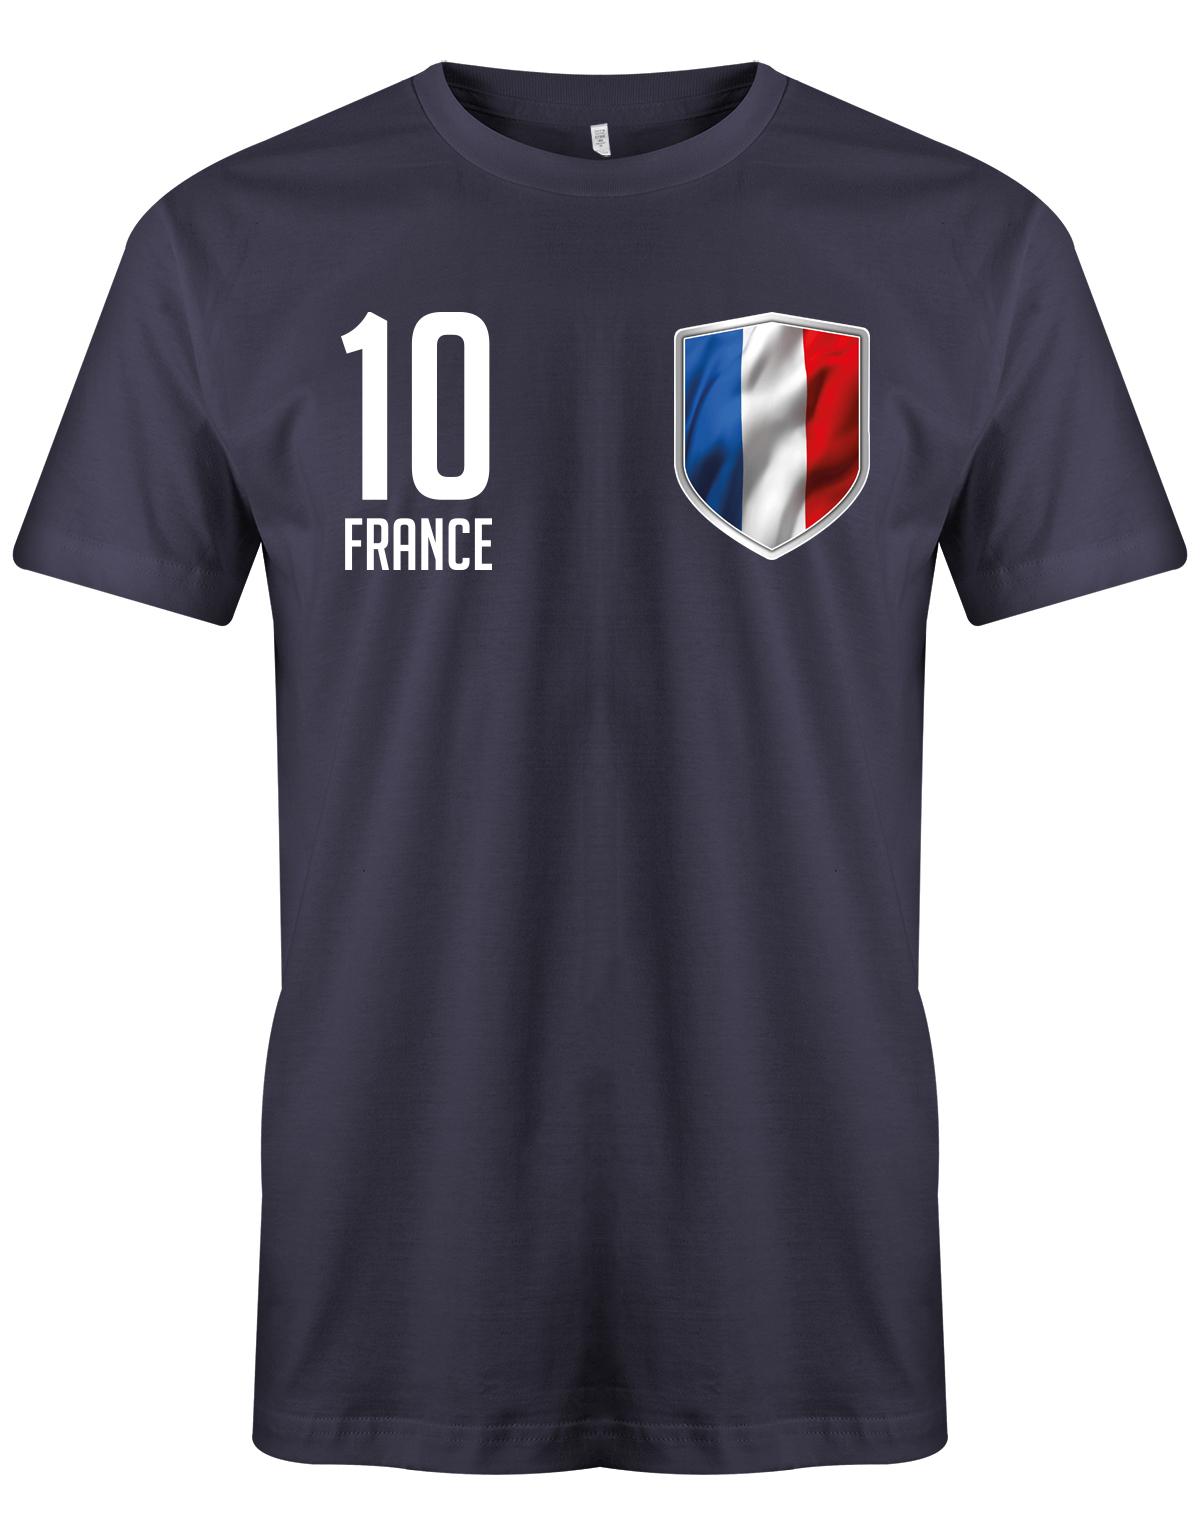 France-10-Herren-Shirt-Navy